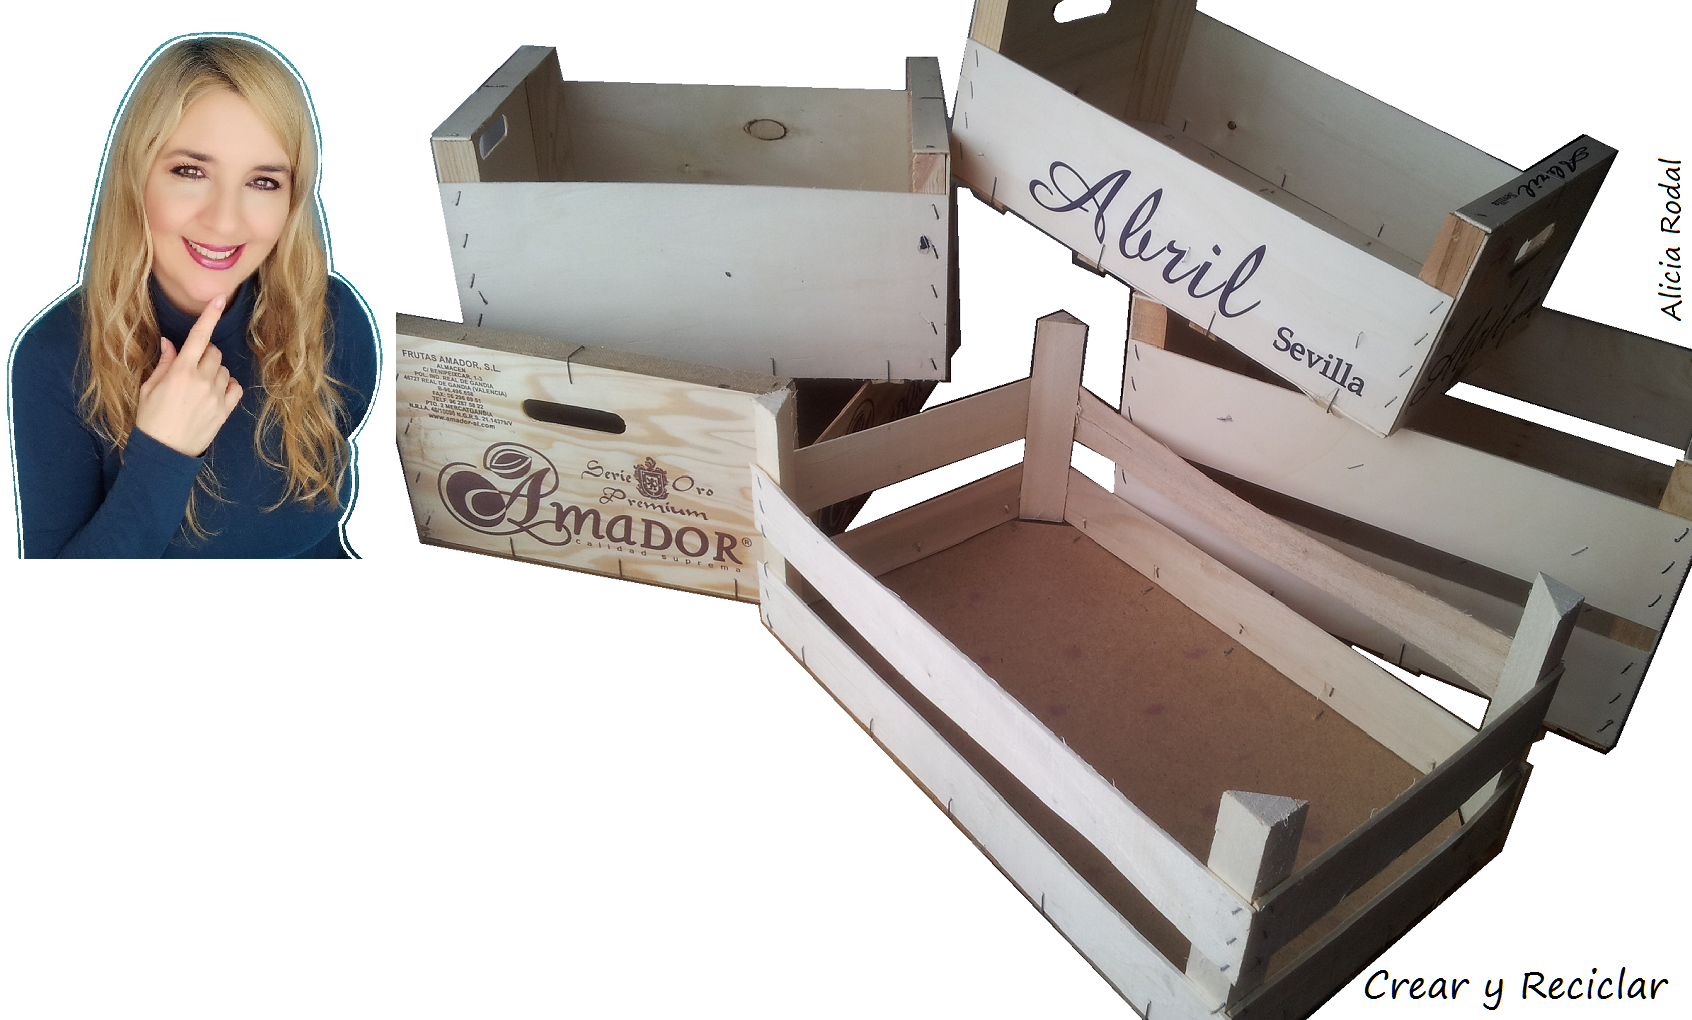 10,2 cm x 9,8 cm x 8,2 cm Ideas con corazón caja de madera caja de madera para ahorrar comida ideal para manualidades y pintar con cierre de plástico en la parte inferior